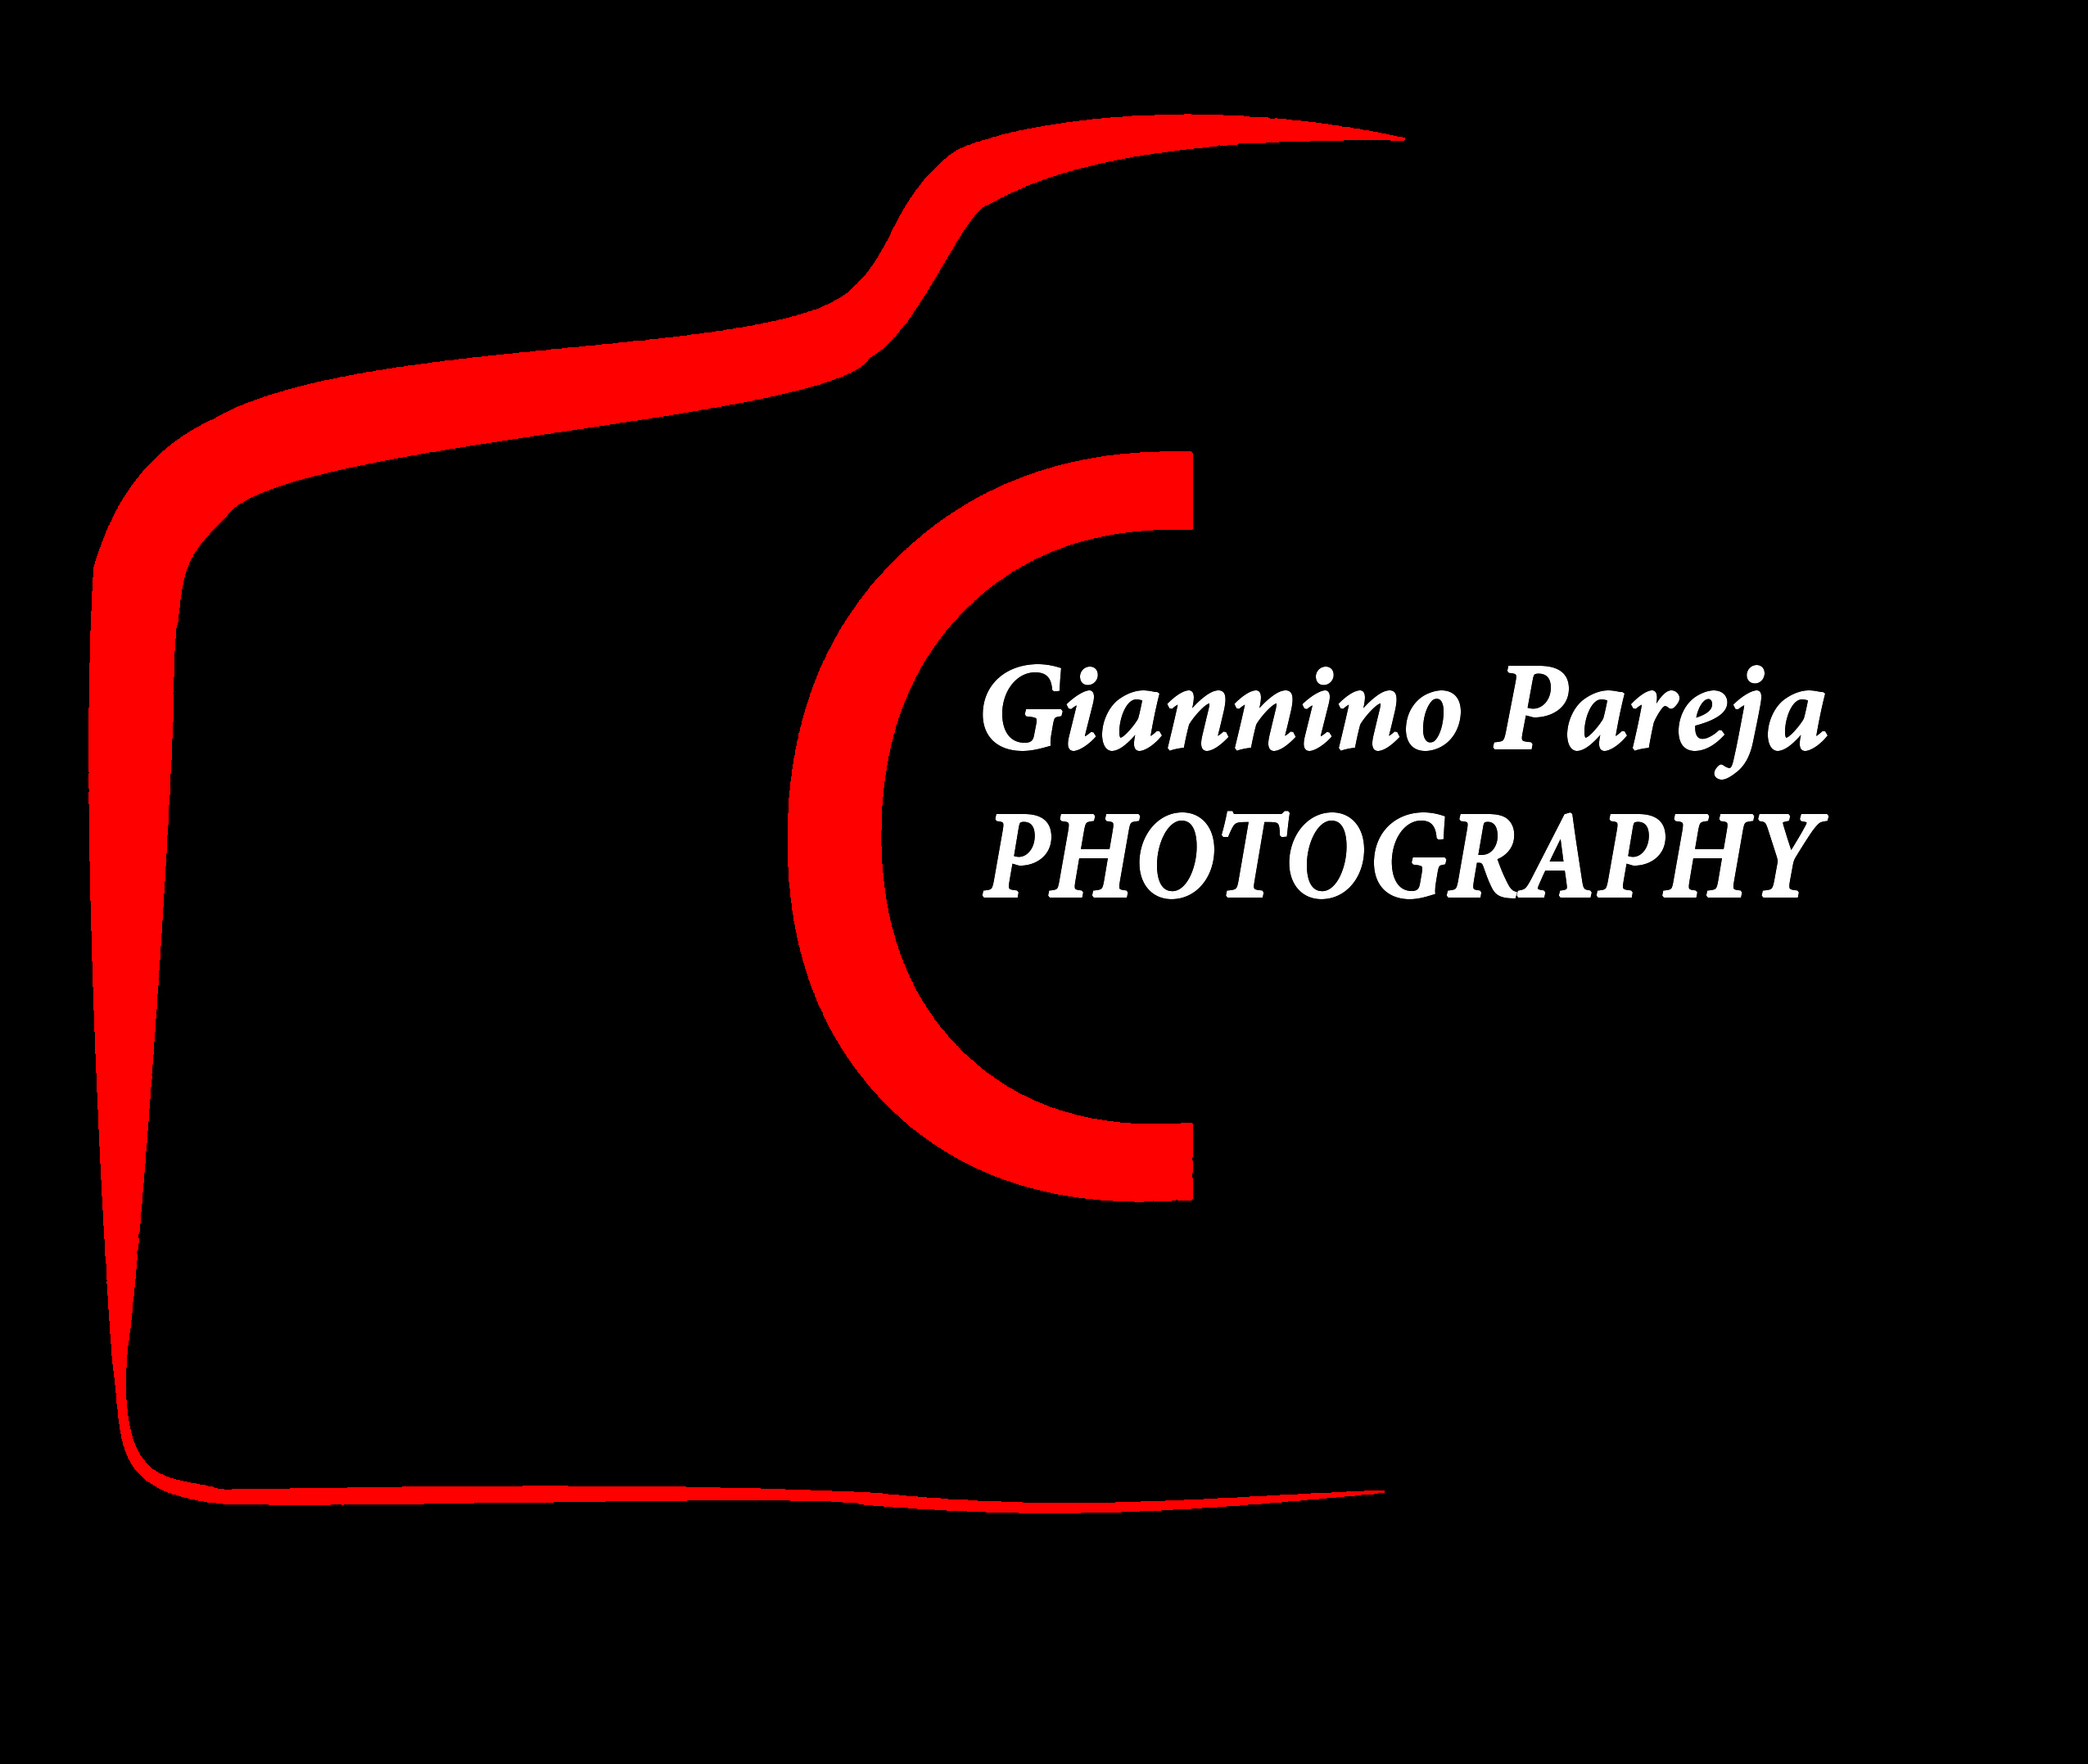 Giannino Pareja